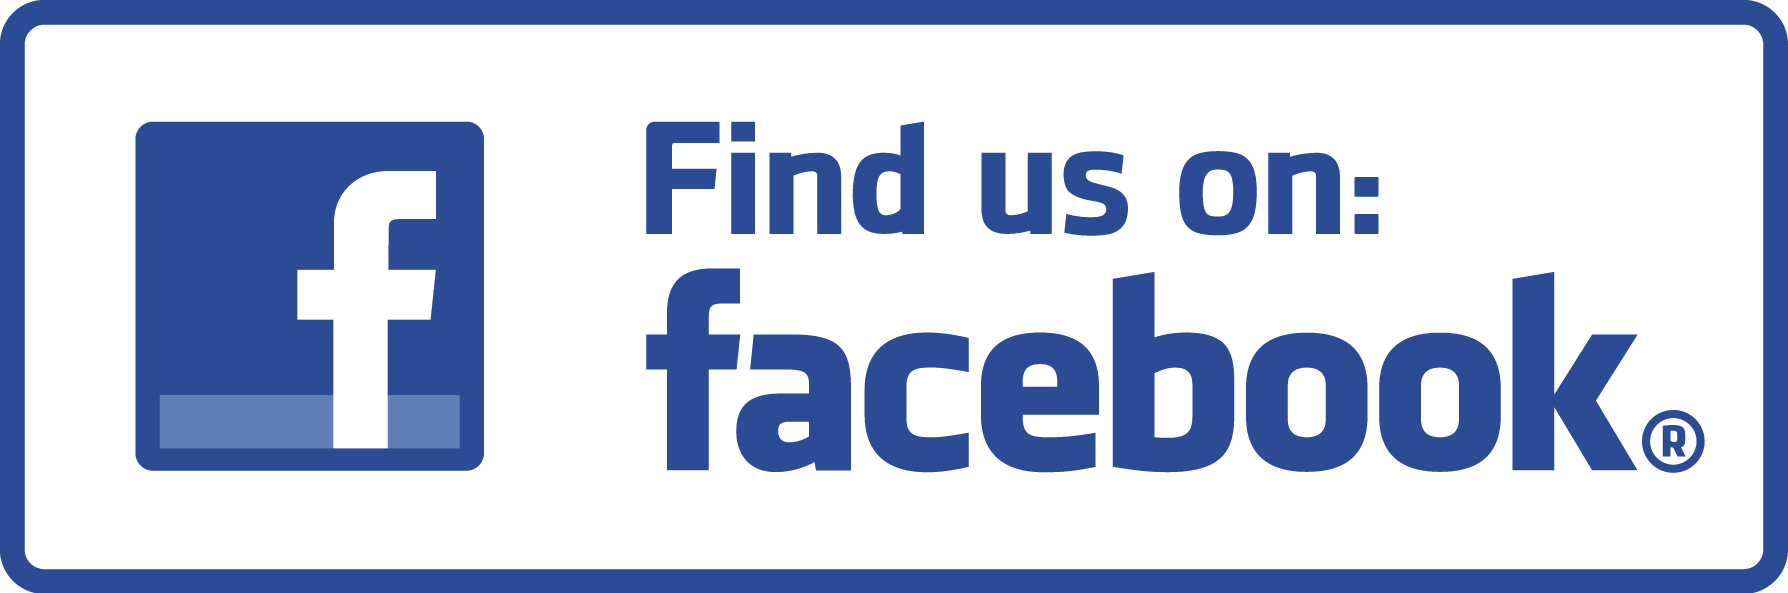 Find Us On Facebook Sign PNG